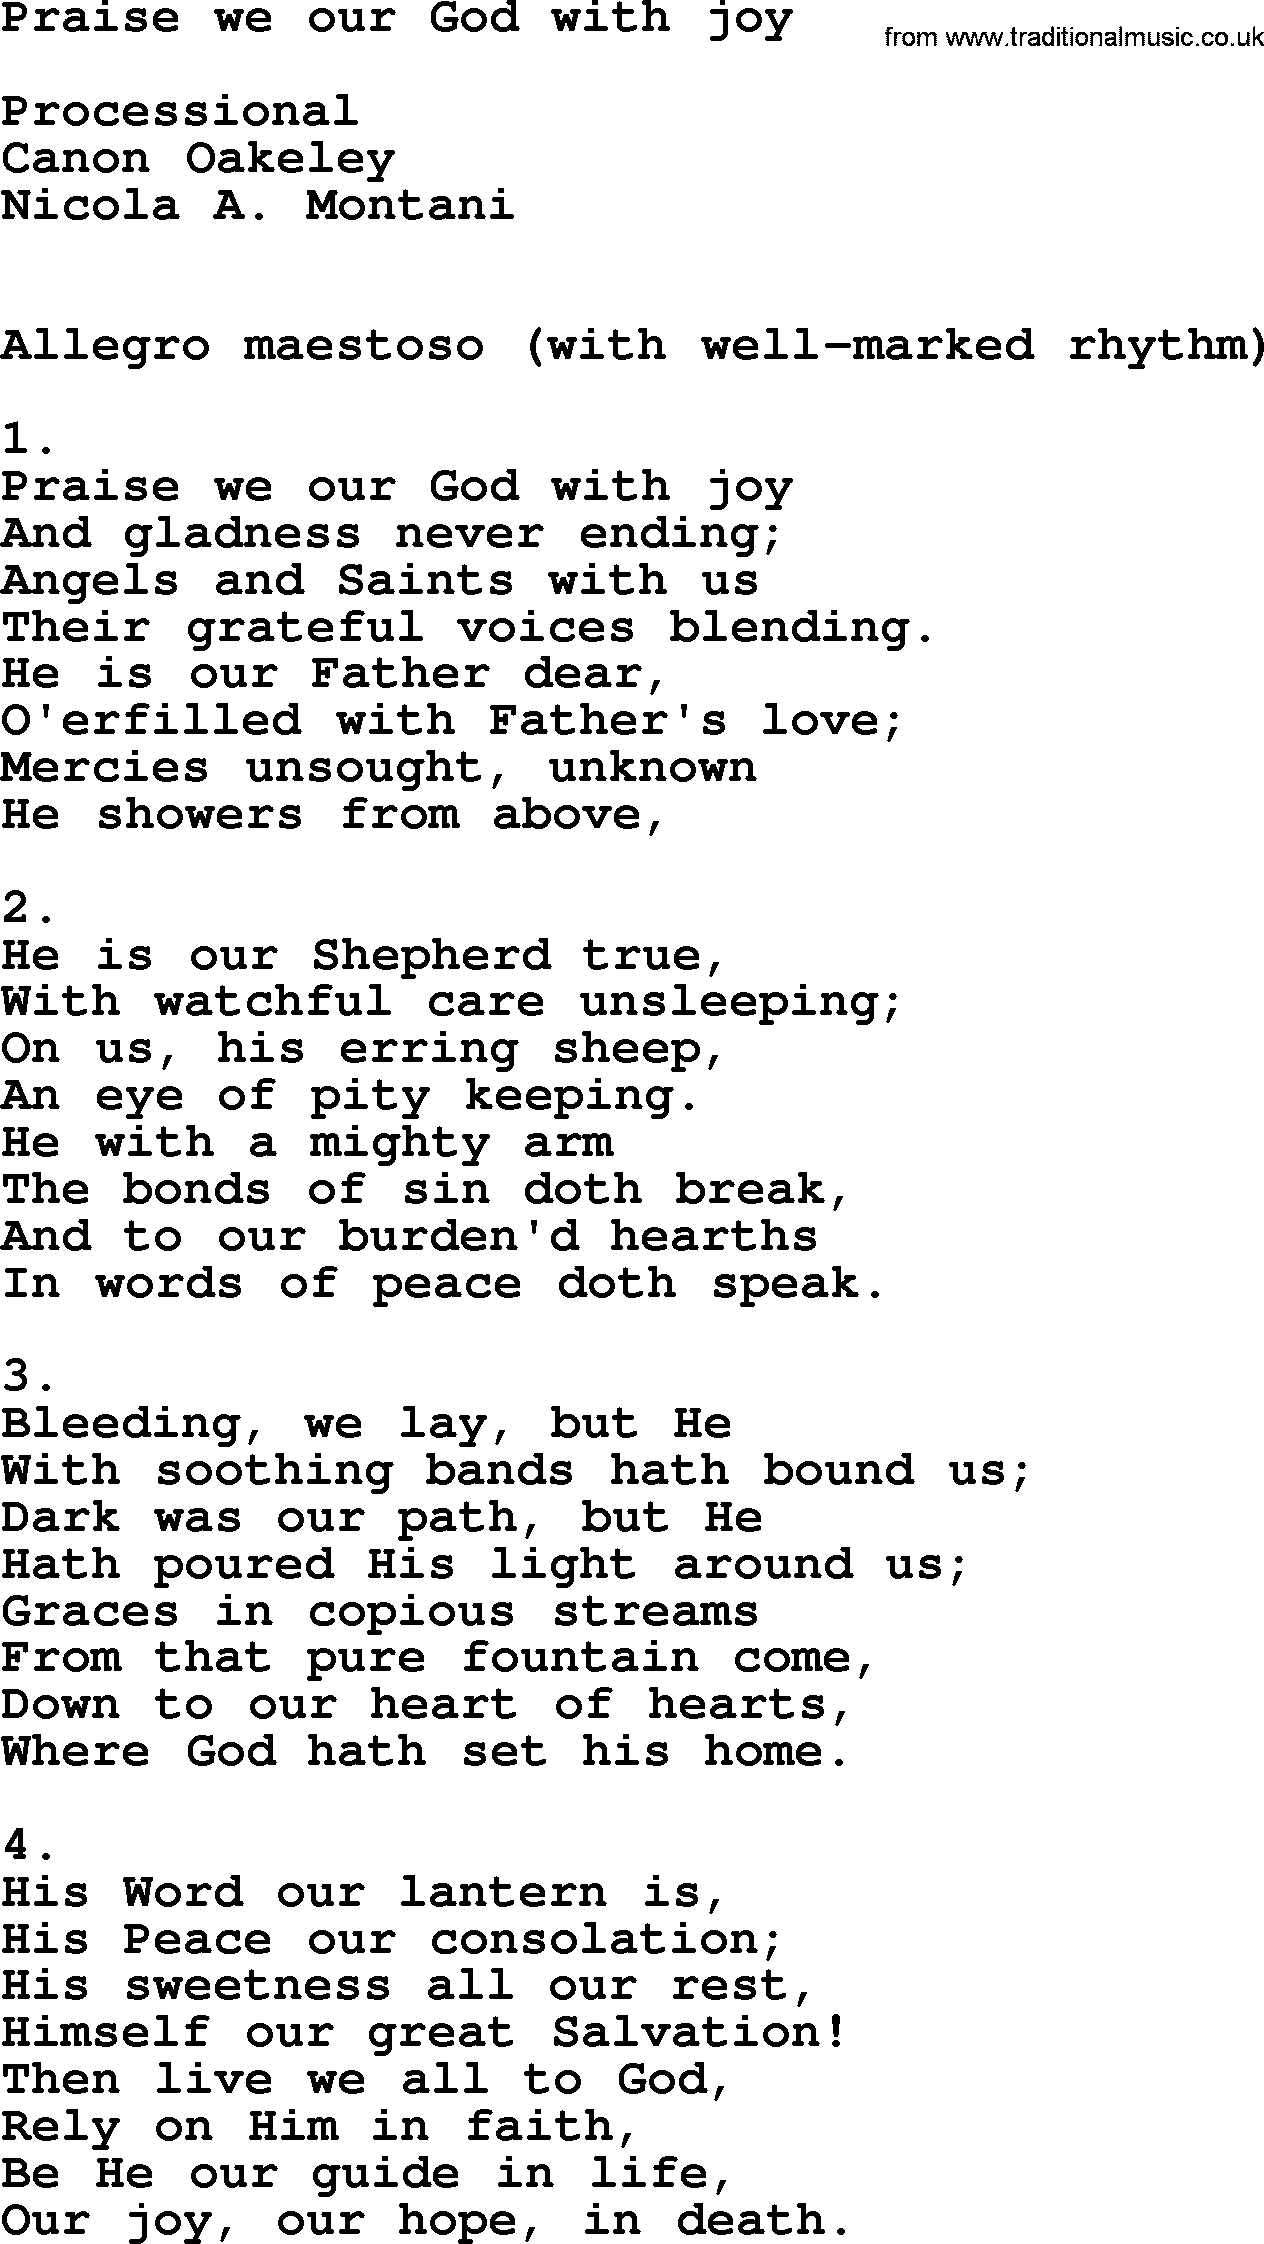 Catholic Hymn: Praise We Our God With Joy lyrics with PDF